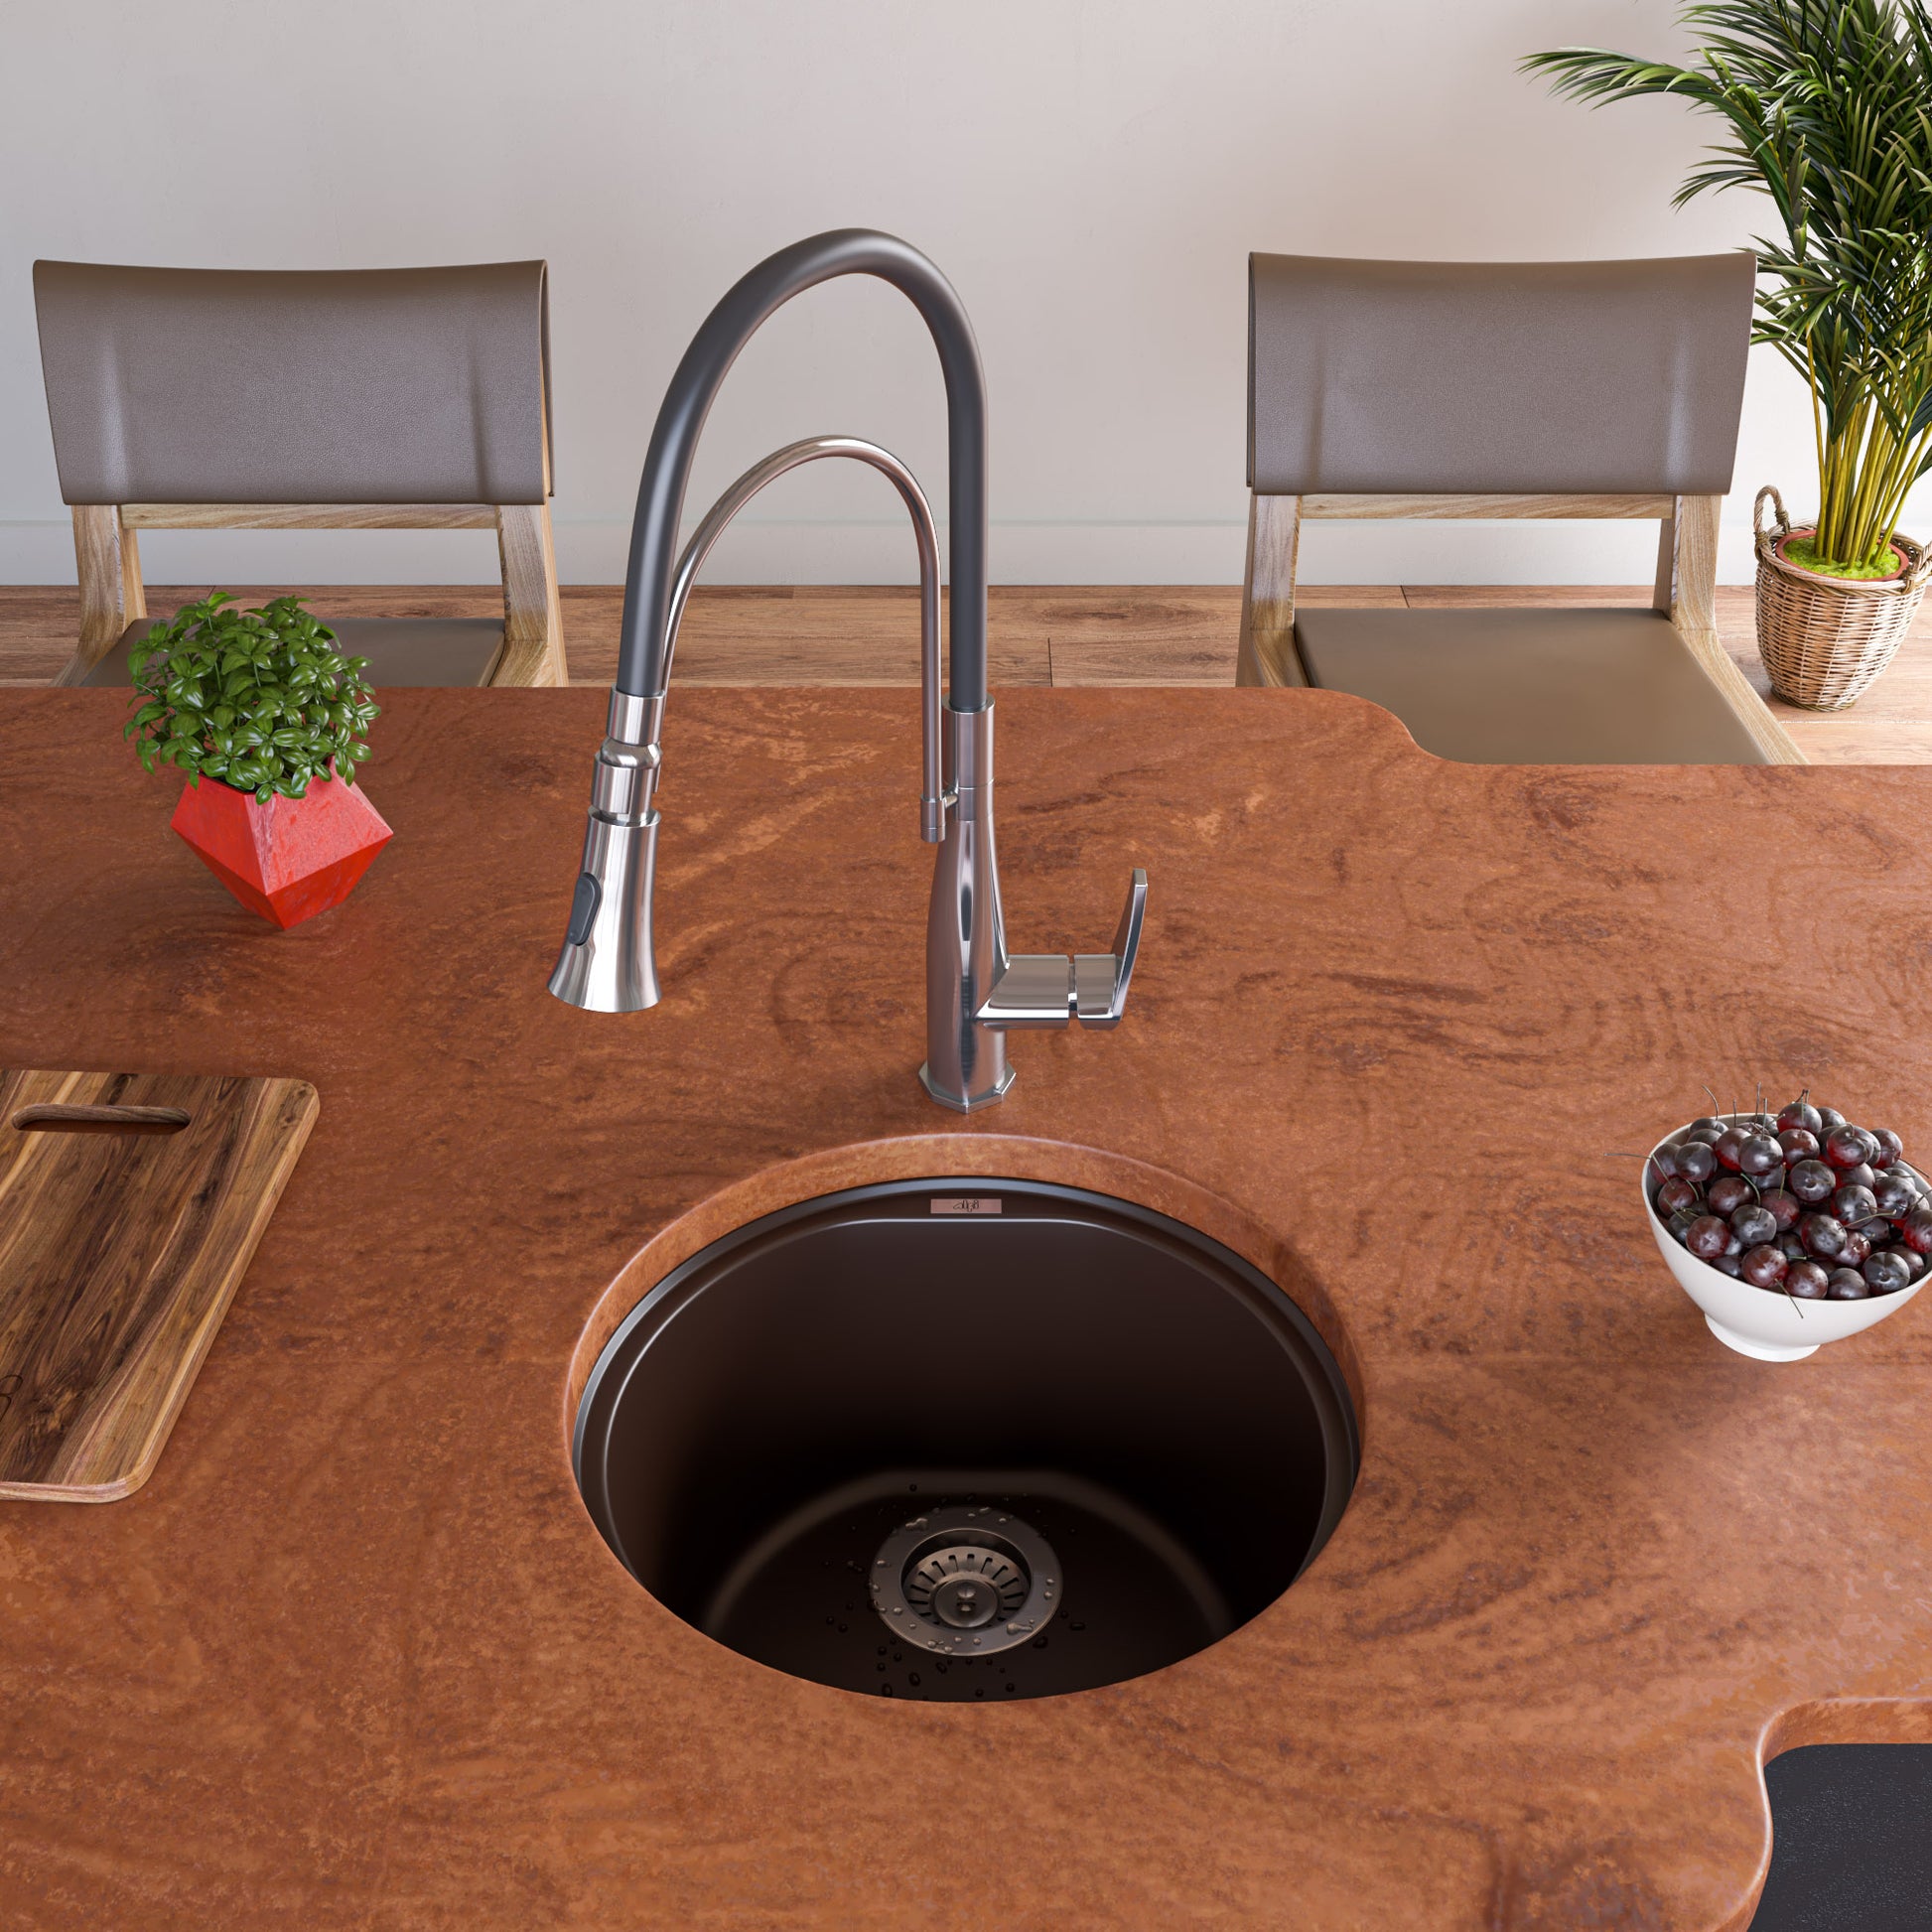 Alfi brand AB1717UM 17" Undermount Round Granite Composite Kitchen Prep Sink Kitchen Sink ALFI brand   